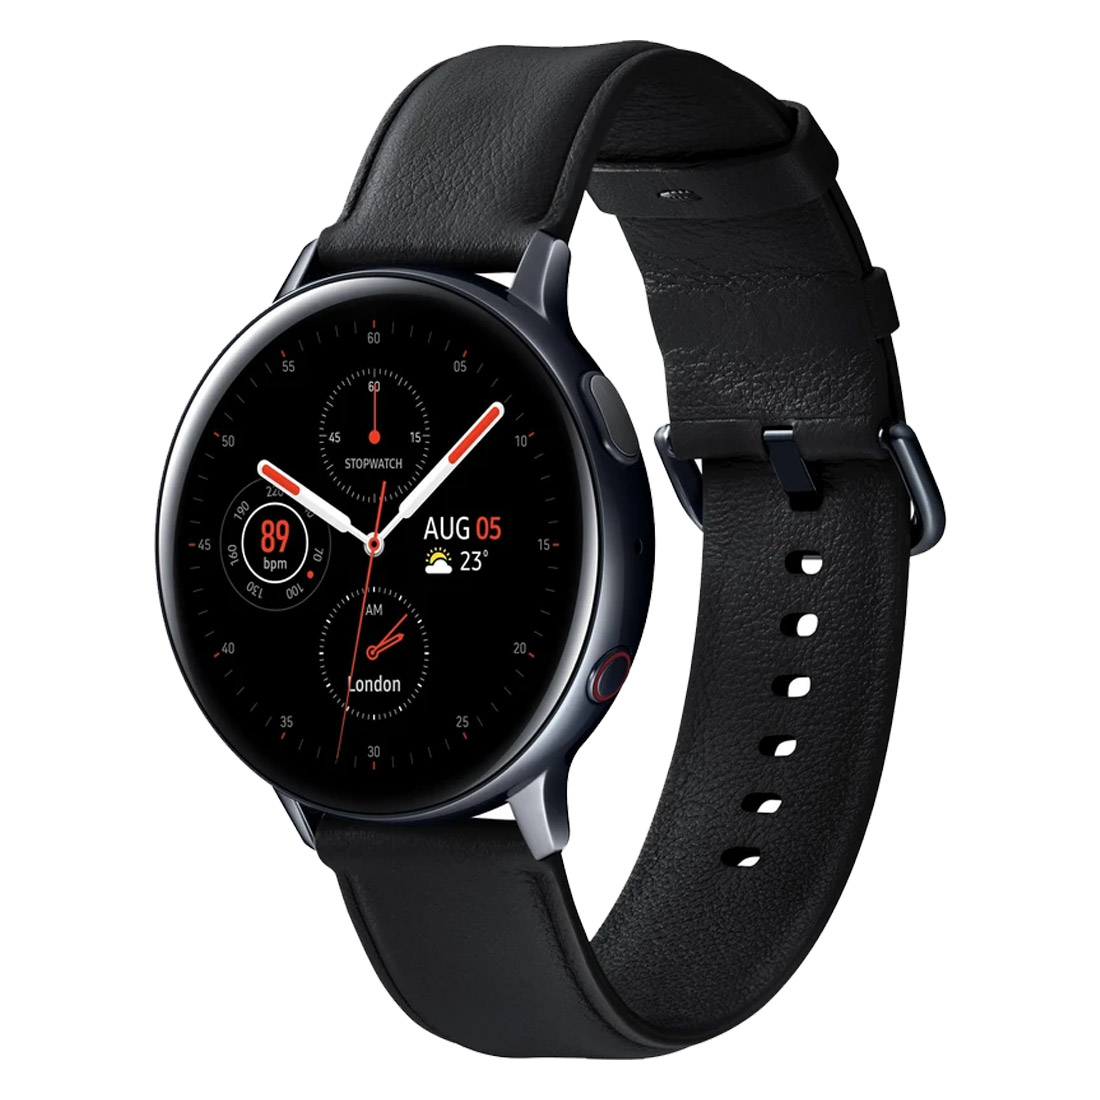 Refurbished Samsung Galaxy Watch Active 2 44mm BT SM-R820X Stainless Steel - Black [Refurbished] - Excellent